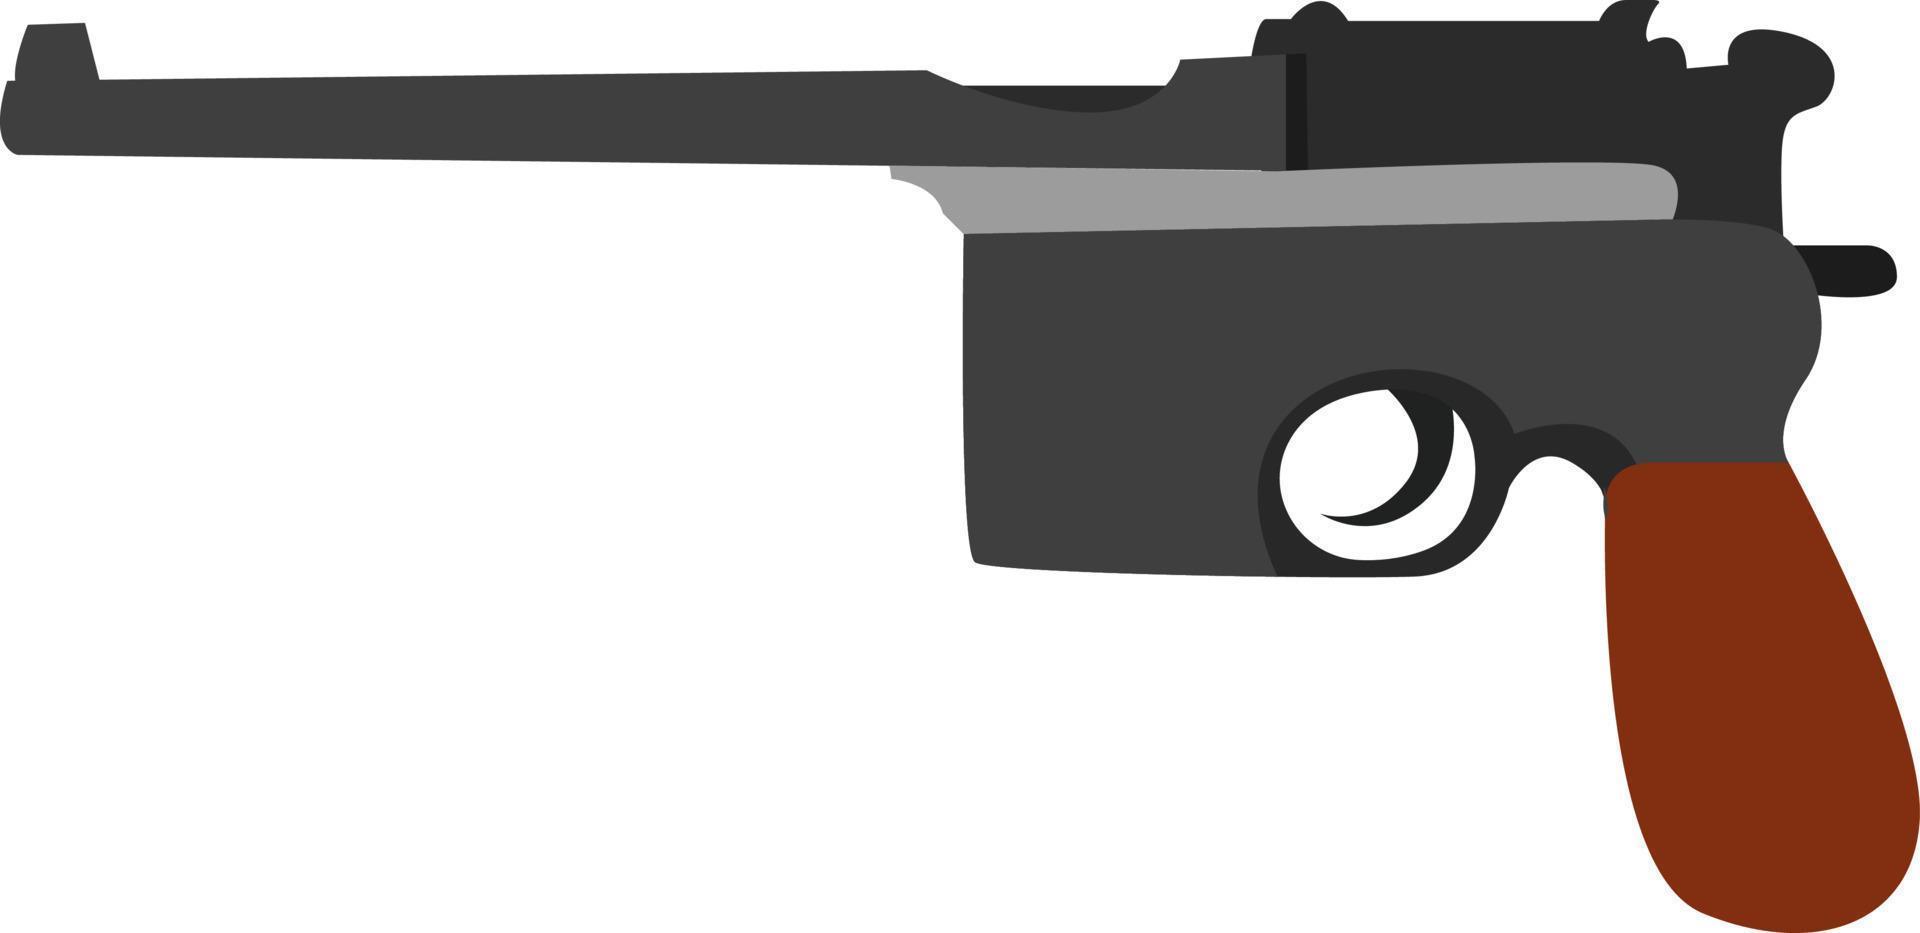 Pistolet mauser, illustration, vecteur sur fond blanc.